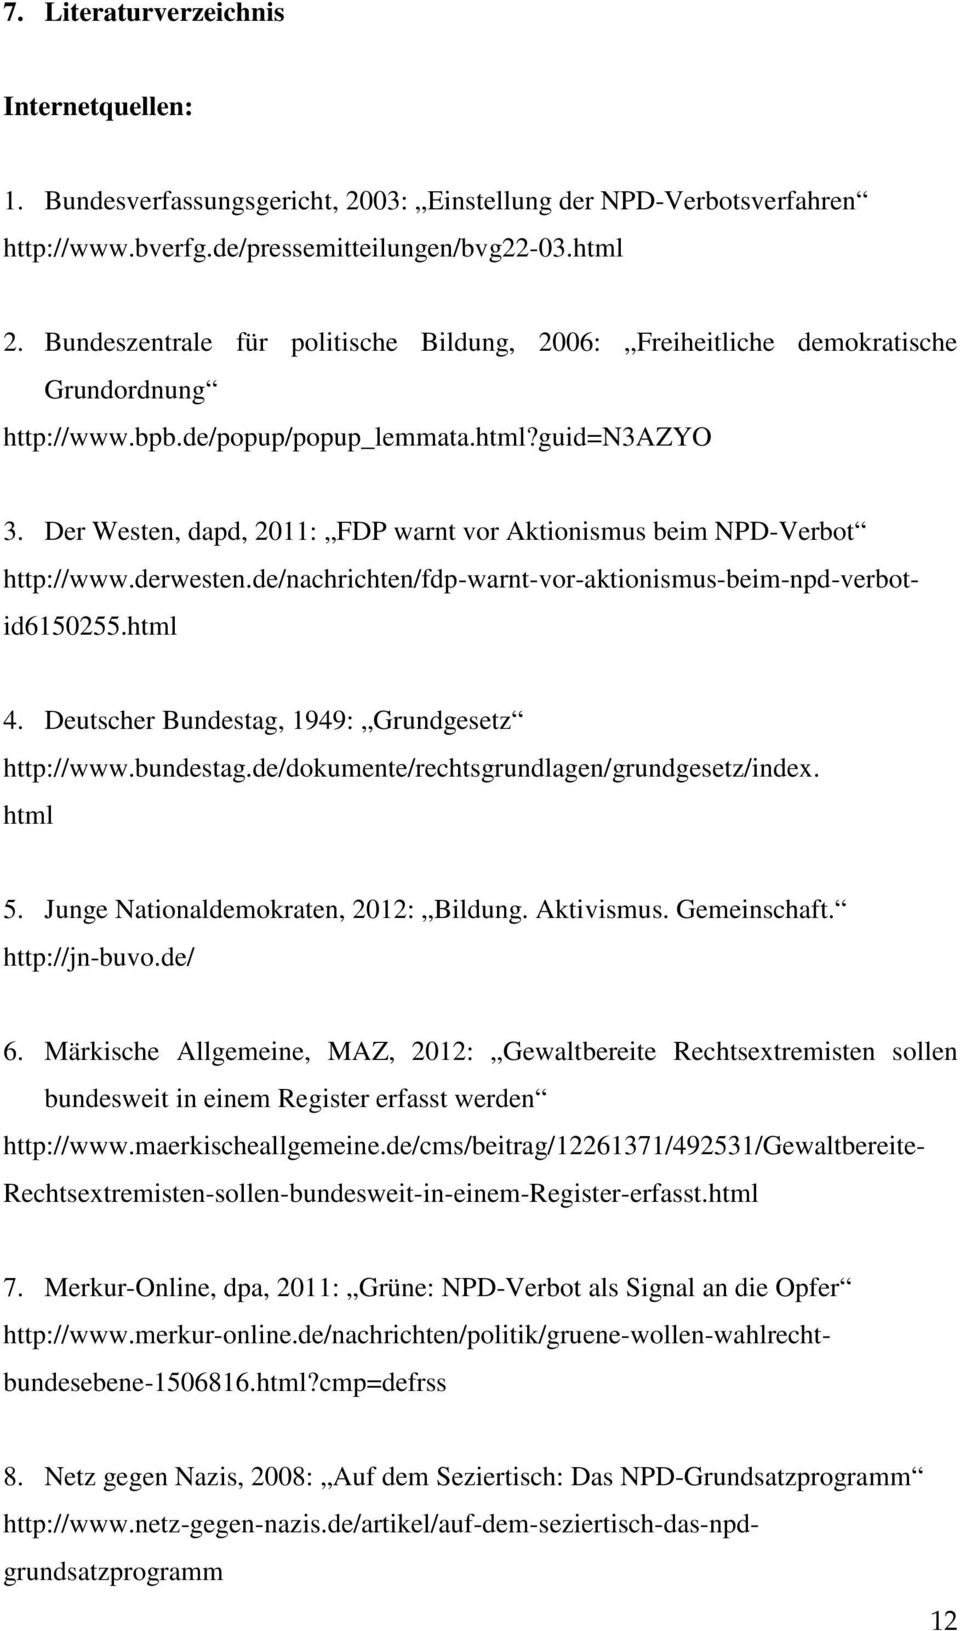 Der Westen, dapd, 2011: FDP warnt vor Aktionismus beim NPD-Verbot 4. Deutscher Bundestag, 1949: Grundgesetz http://www.bundestag.de/dokumente/rechtsgrundlagen/grundgesetz/index. html 5.